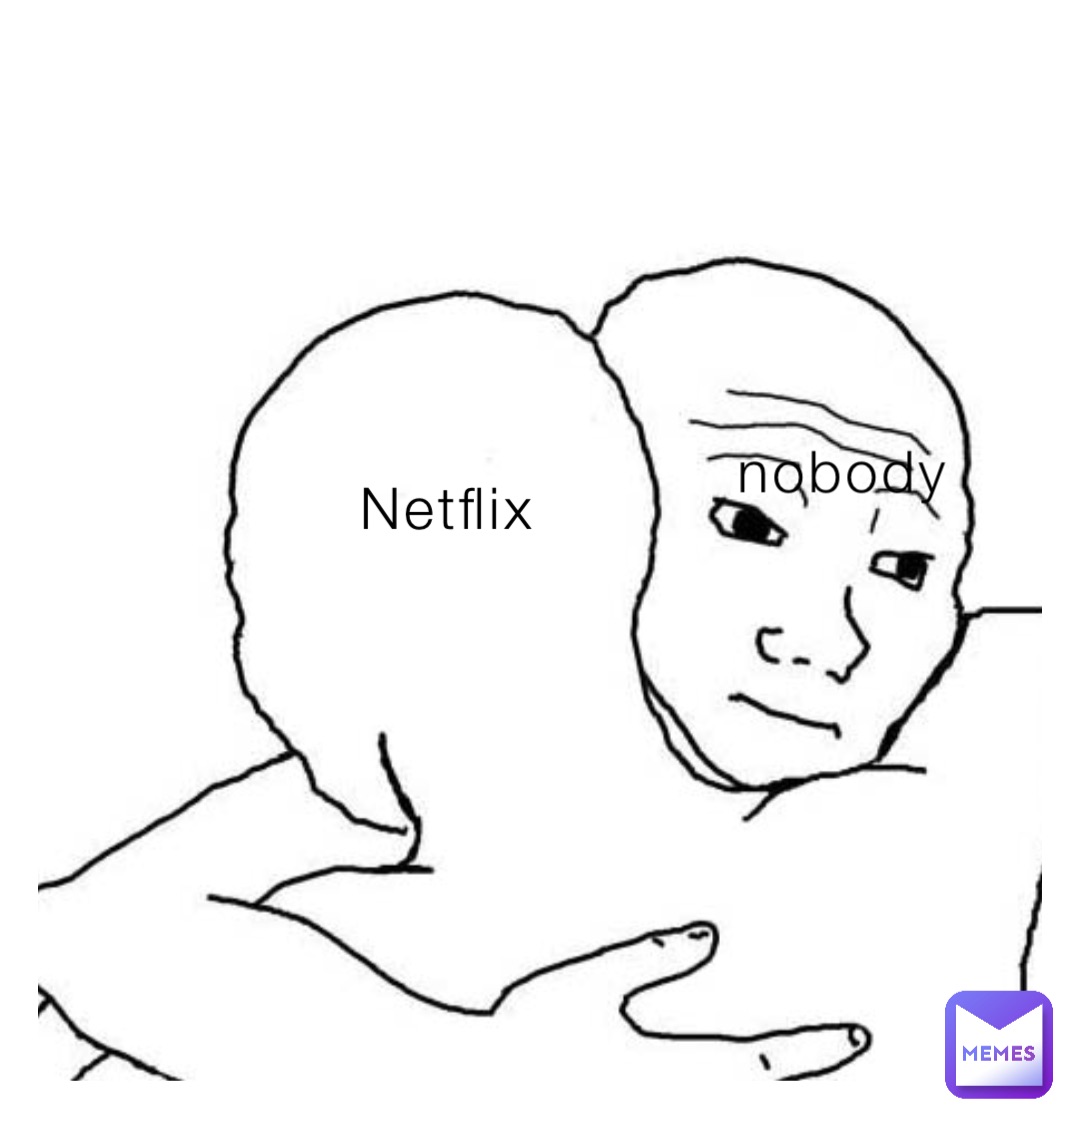 Netflix nobody